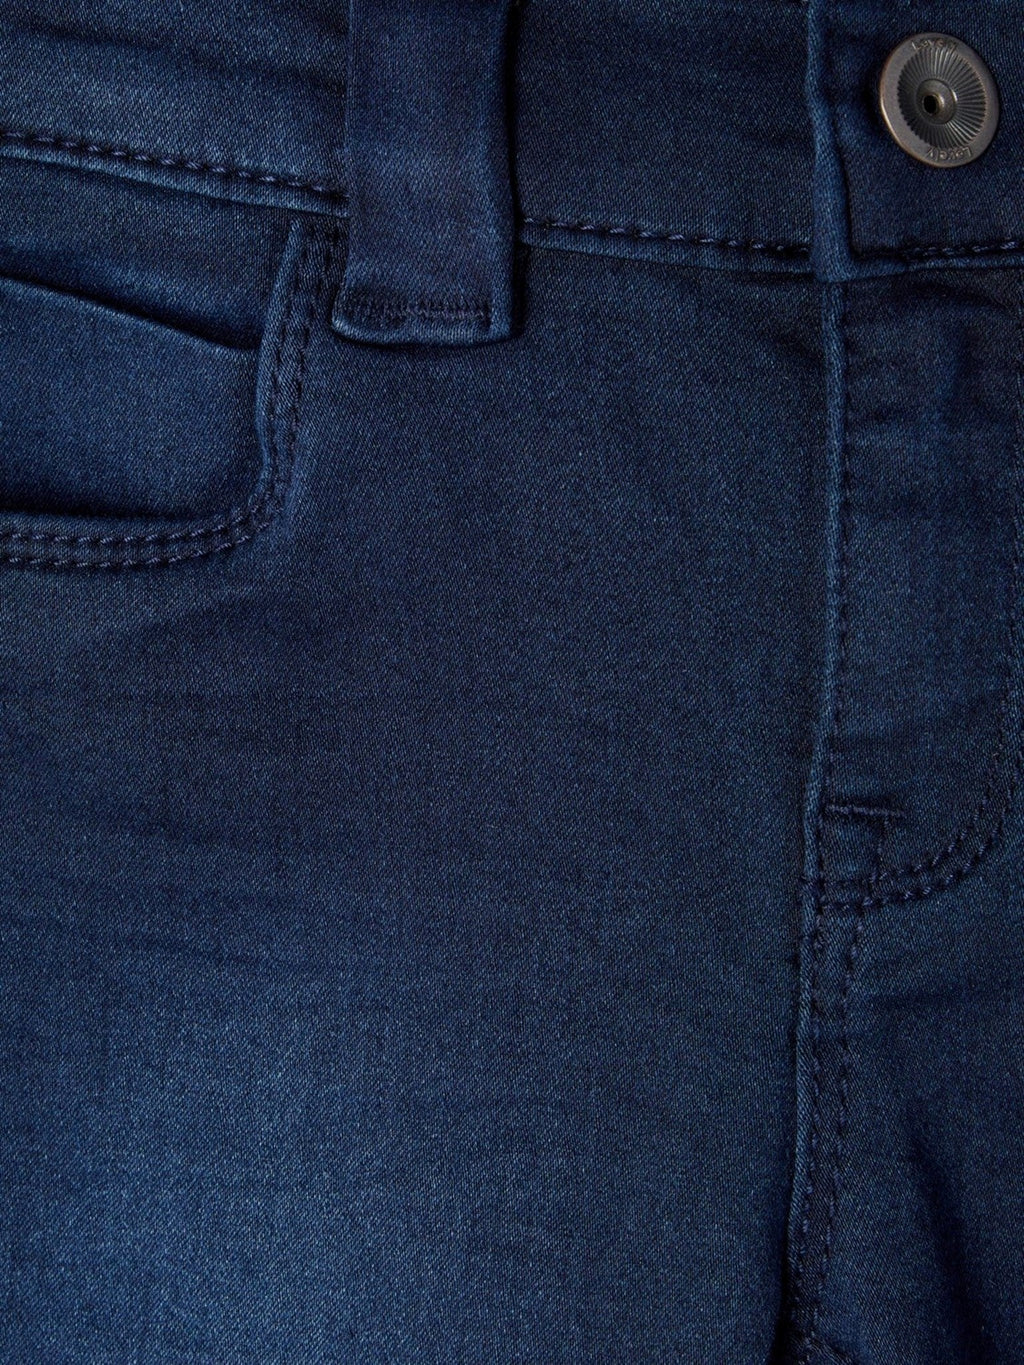 Polly Jeans - mezclilla azul oscuro